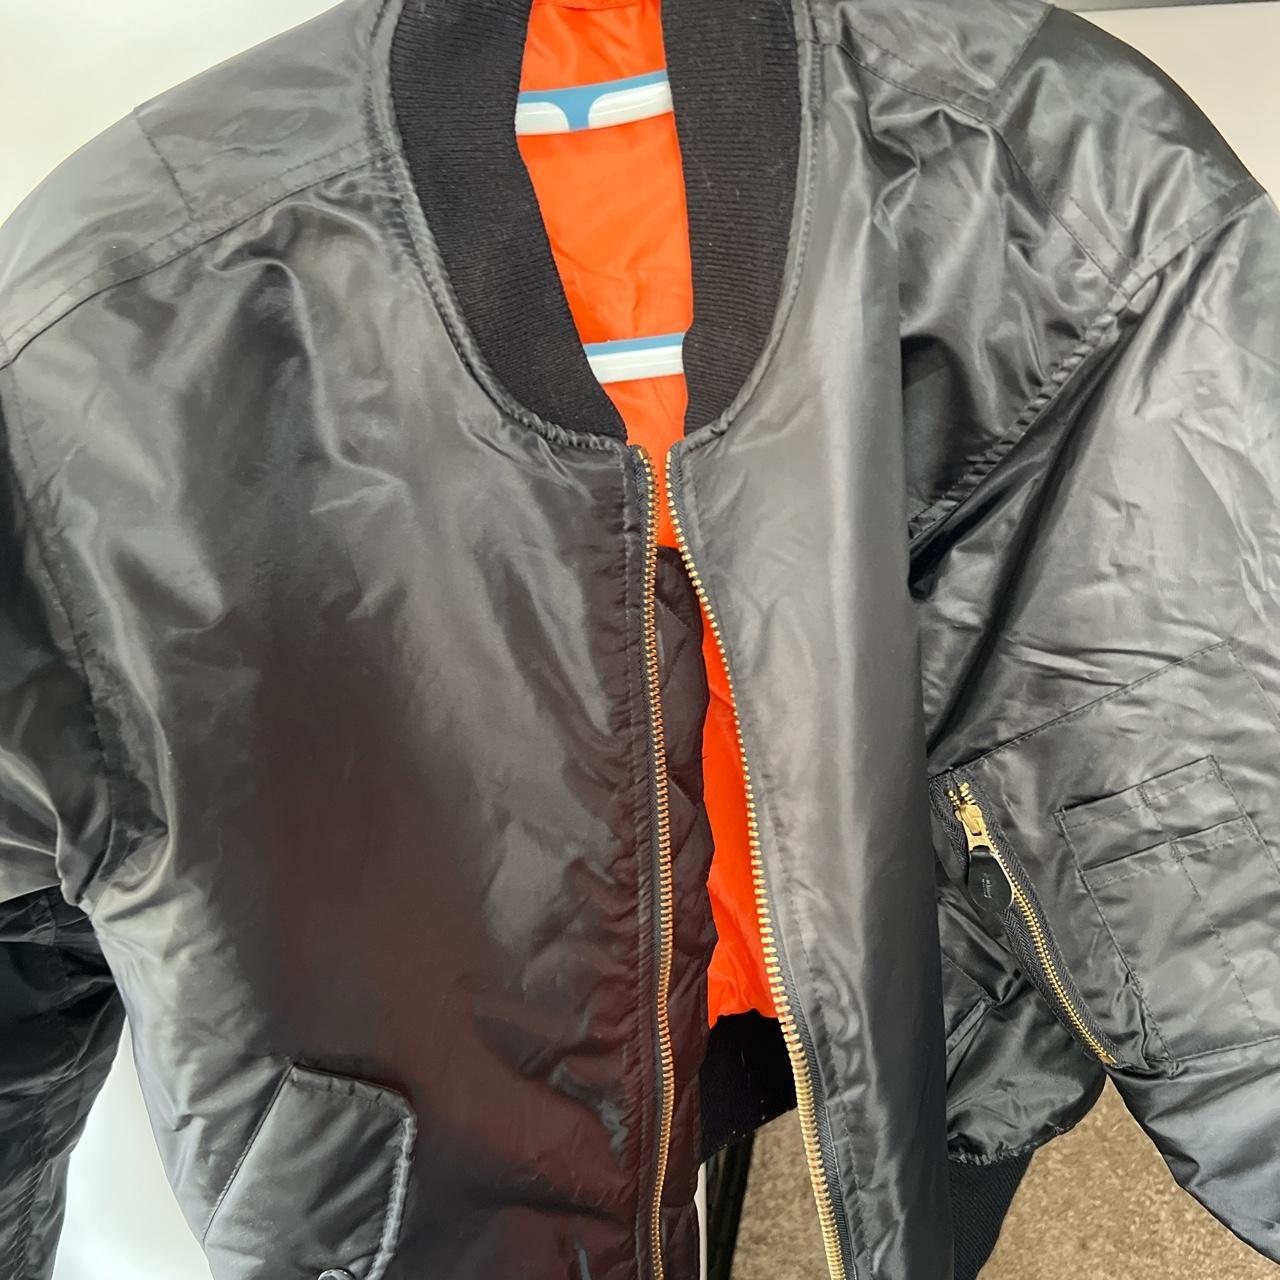 Black & Orange Bomber Jacket Fits M/L Great... - Depop